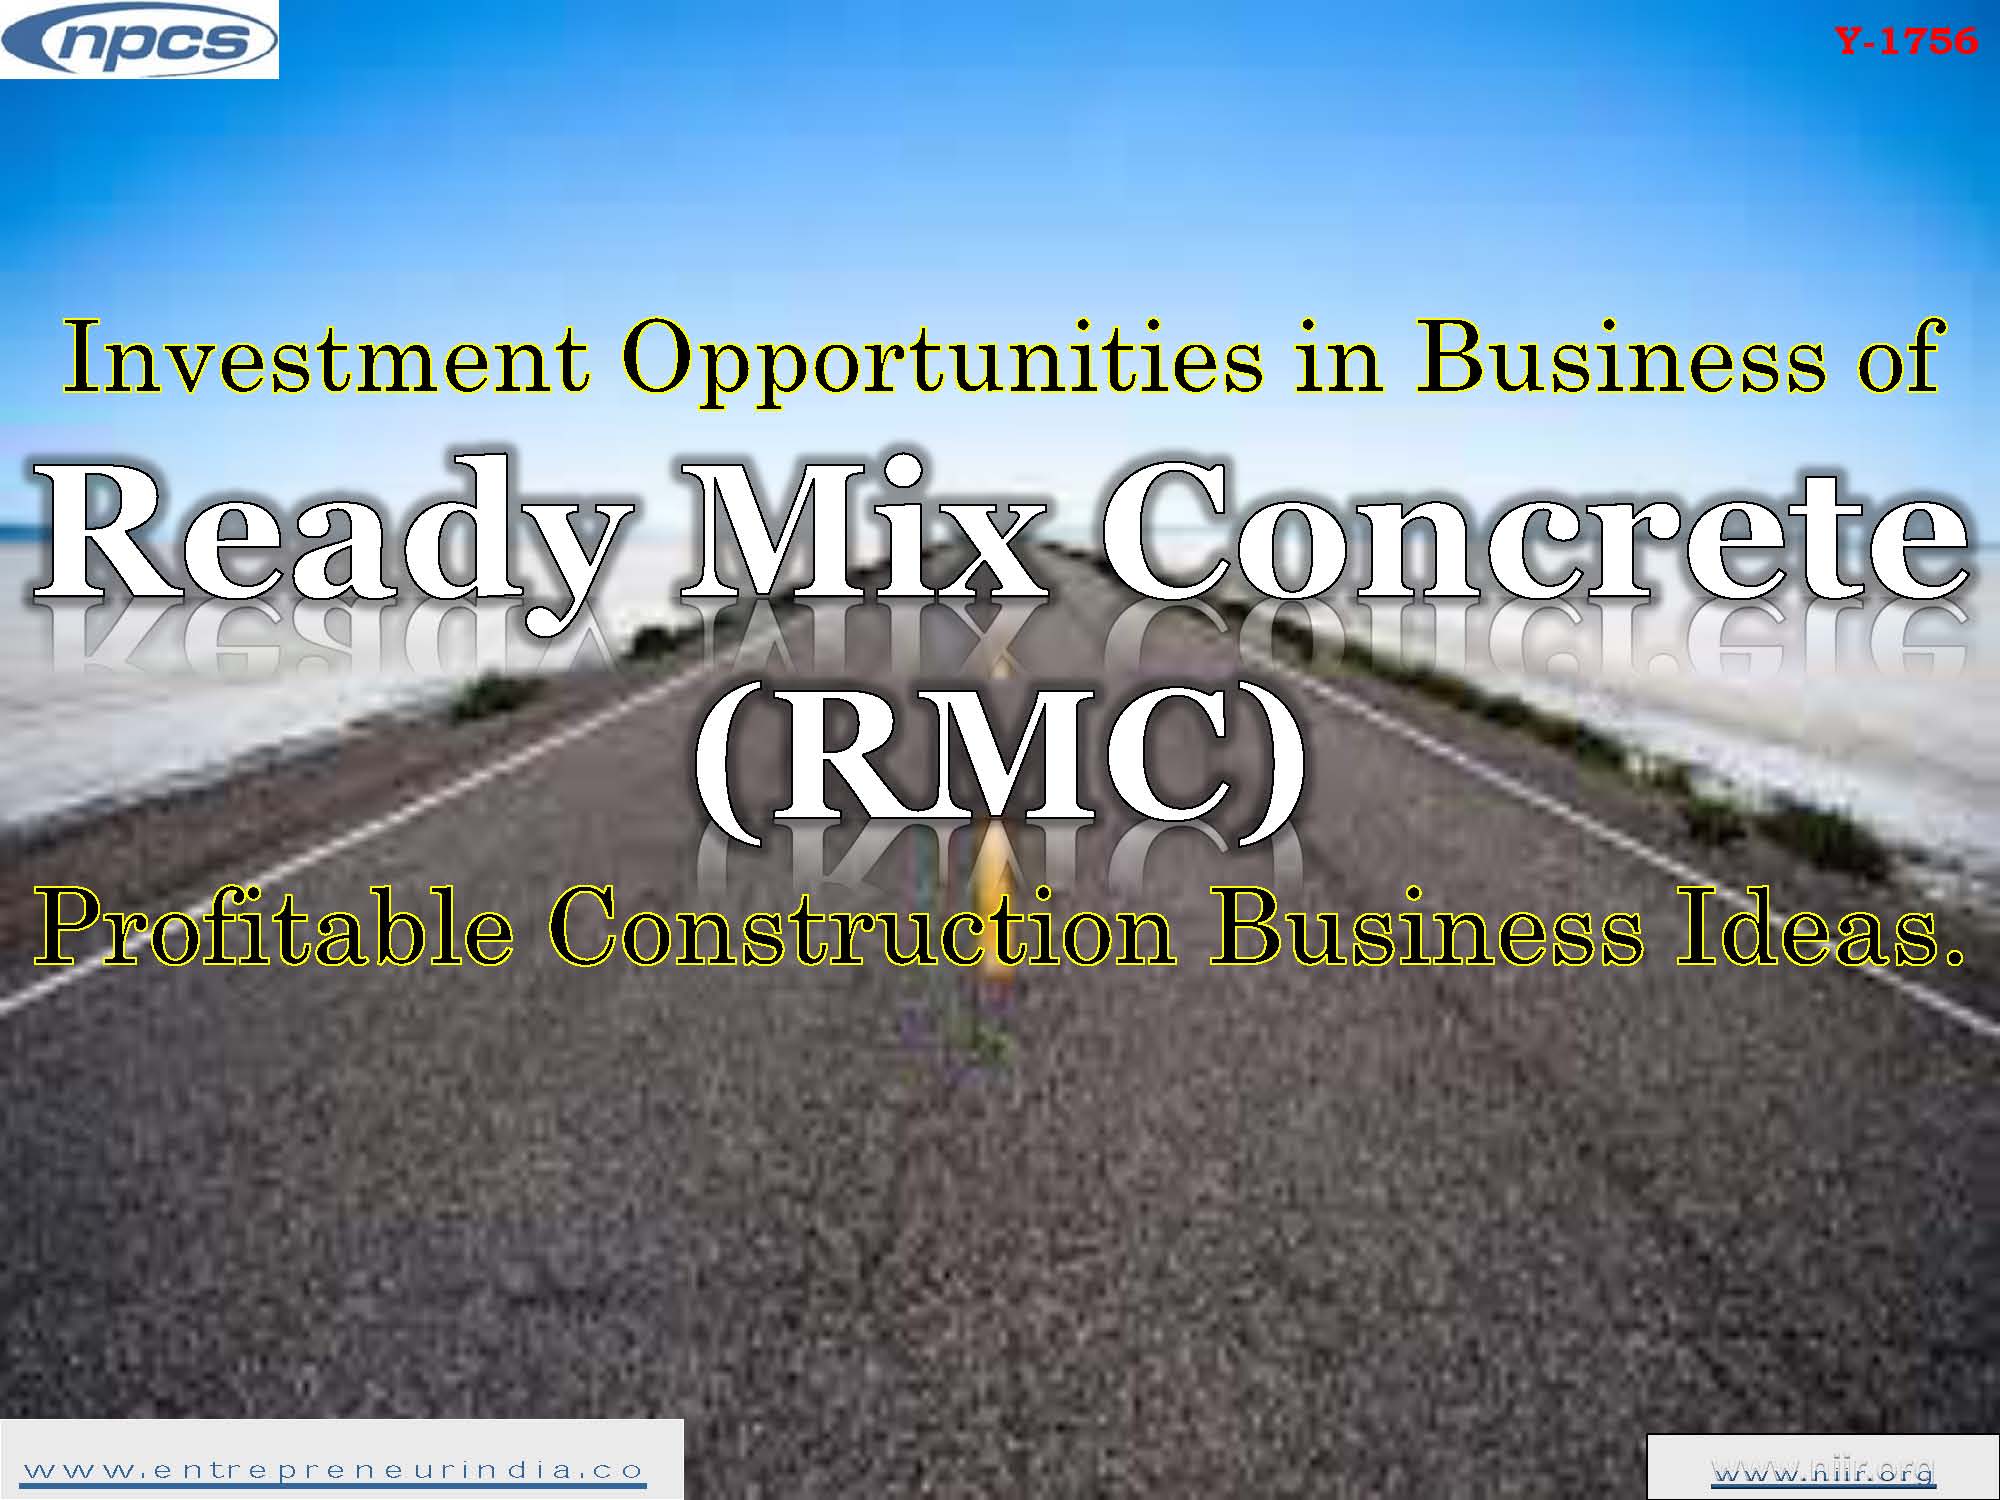 RMC Negócios S/A